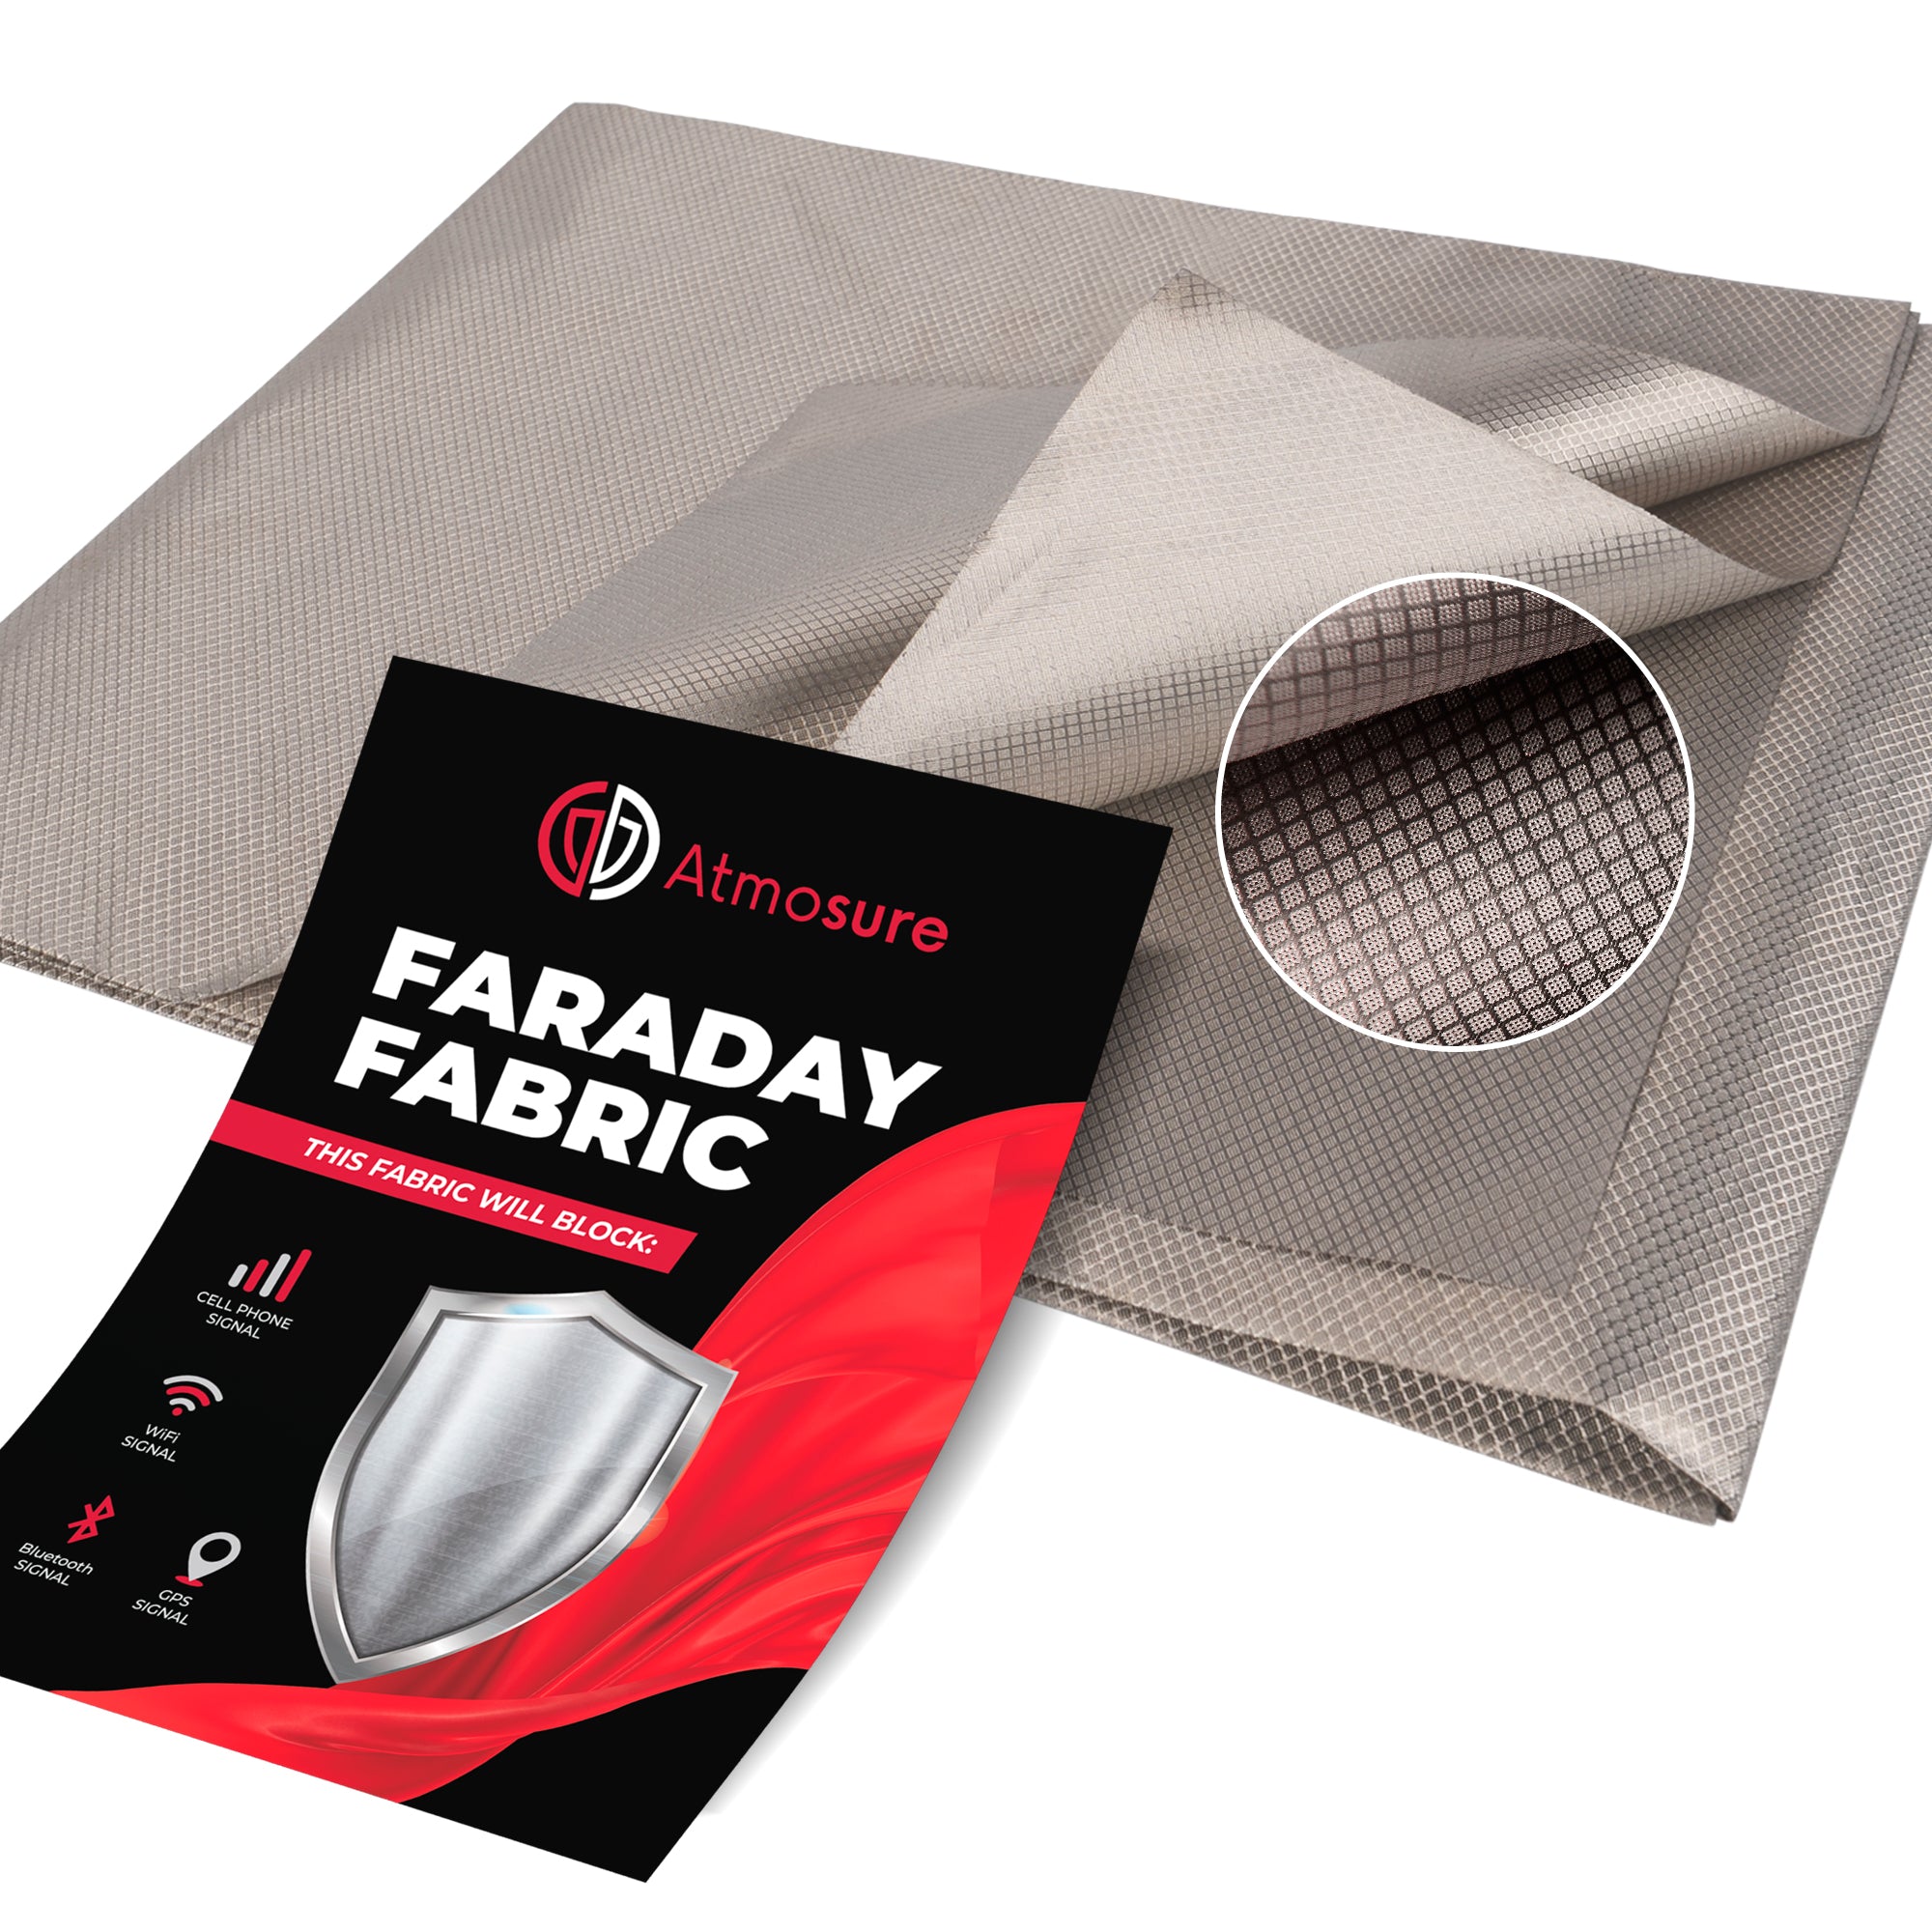 Faraday Fabric (44 x 36) — RF, EMI, & RFID Shielding for 99% EMF Pro –  Atmosure